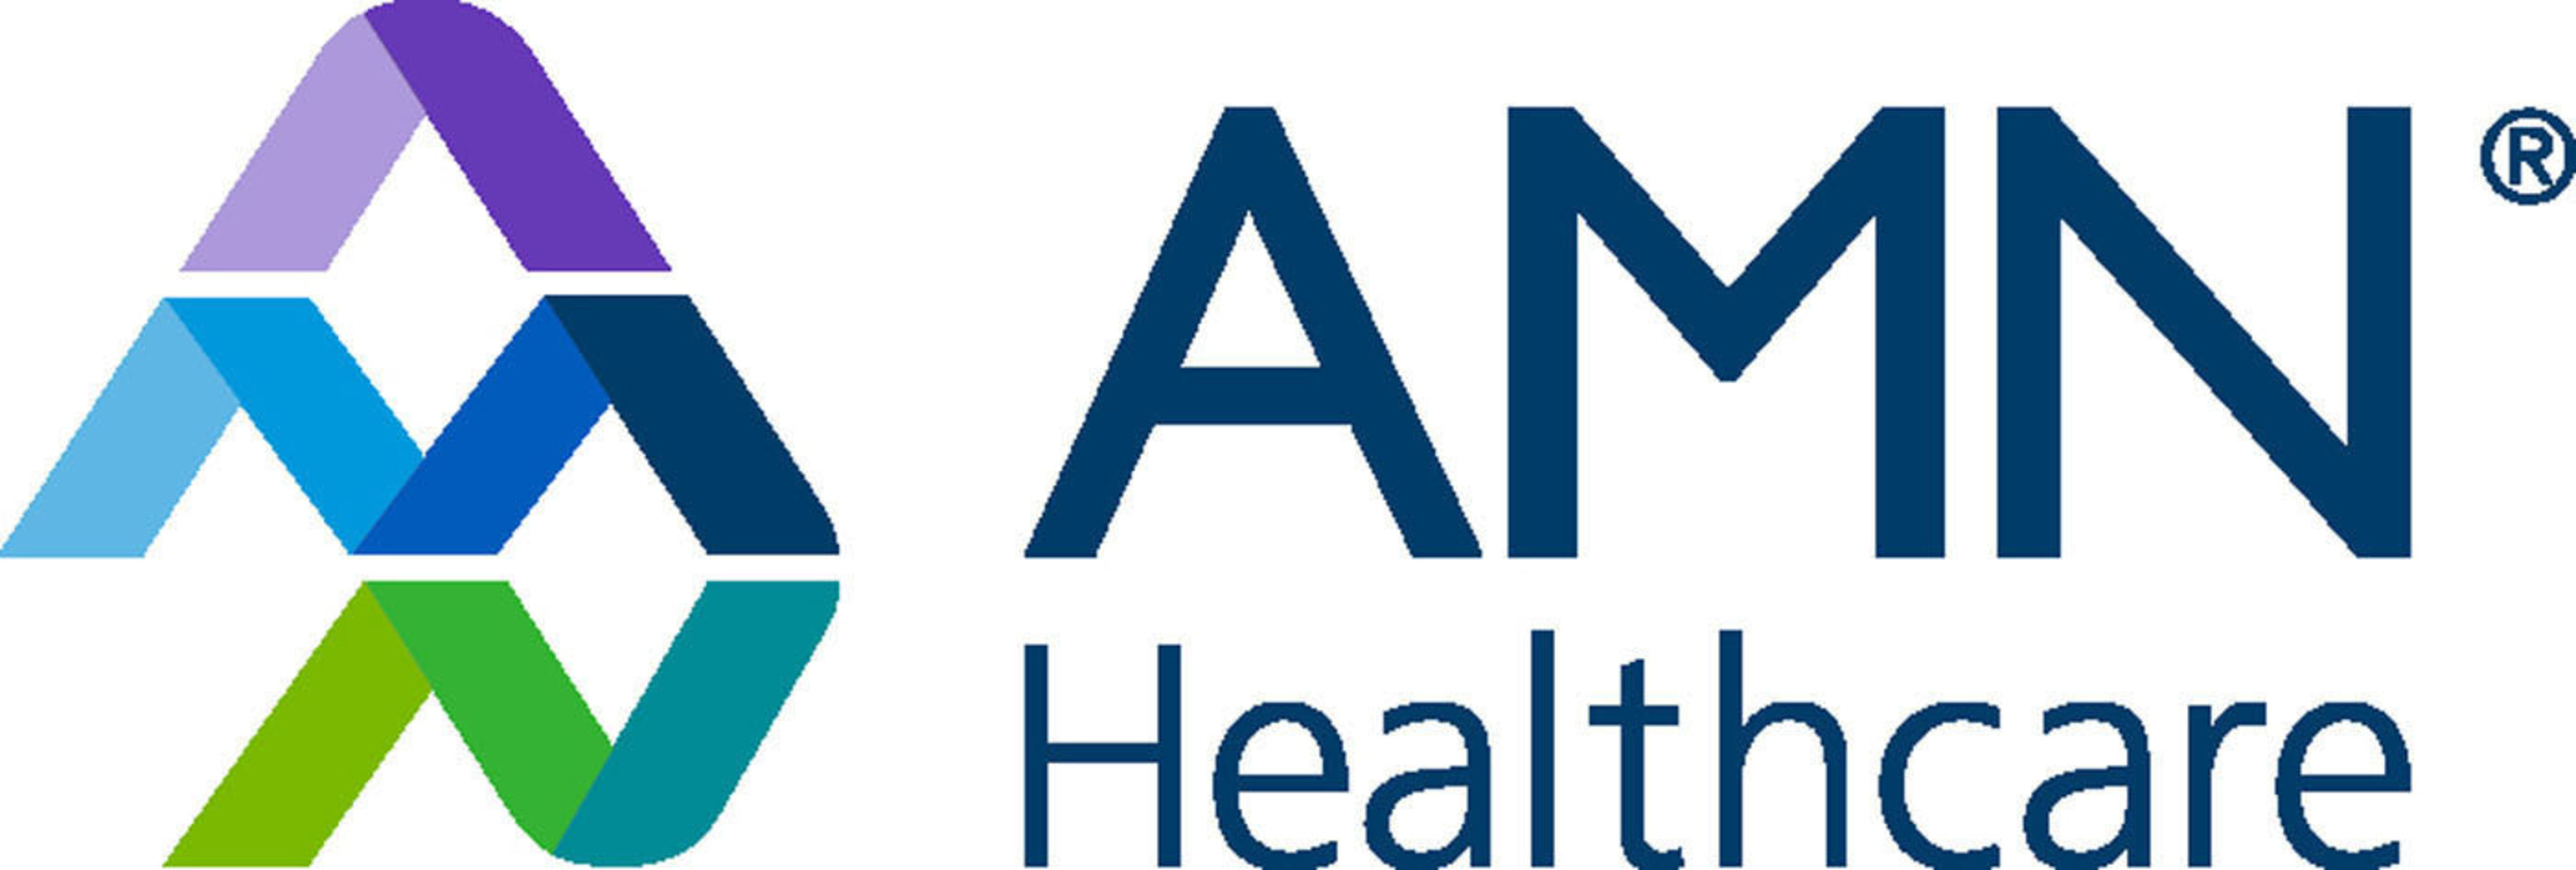 AMN Healthcare Logo. (PRNewsFoto/AMN Healthcare) (PRNewsFoto/)